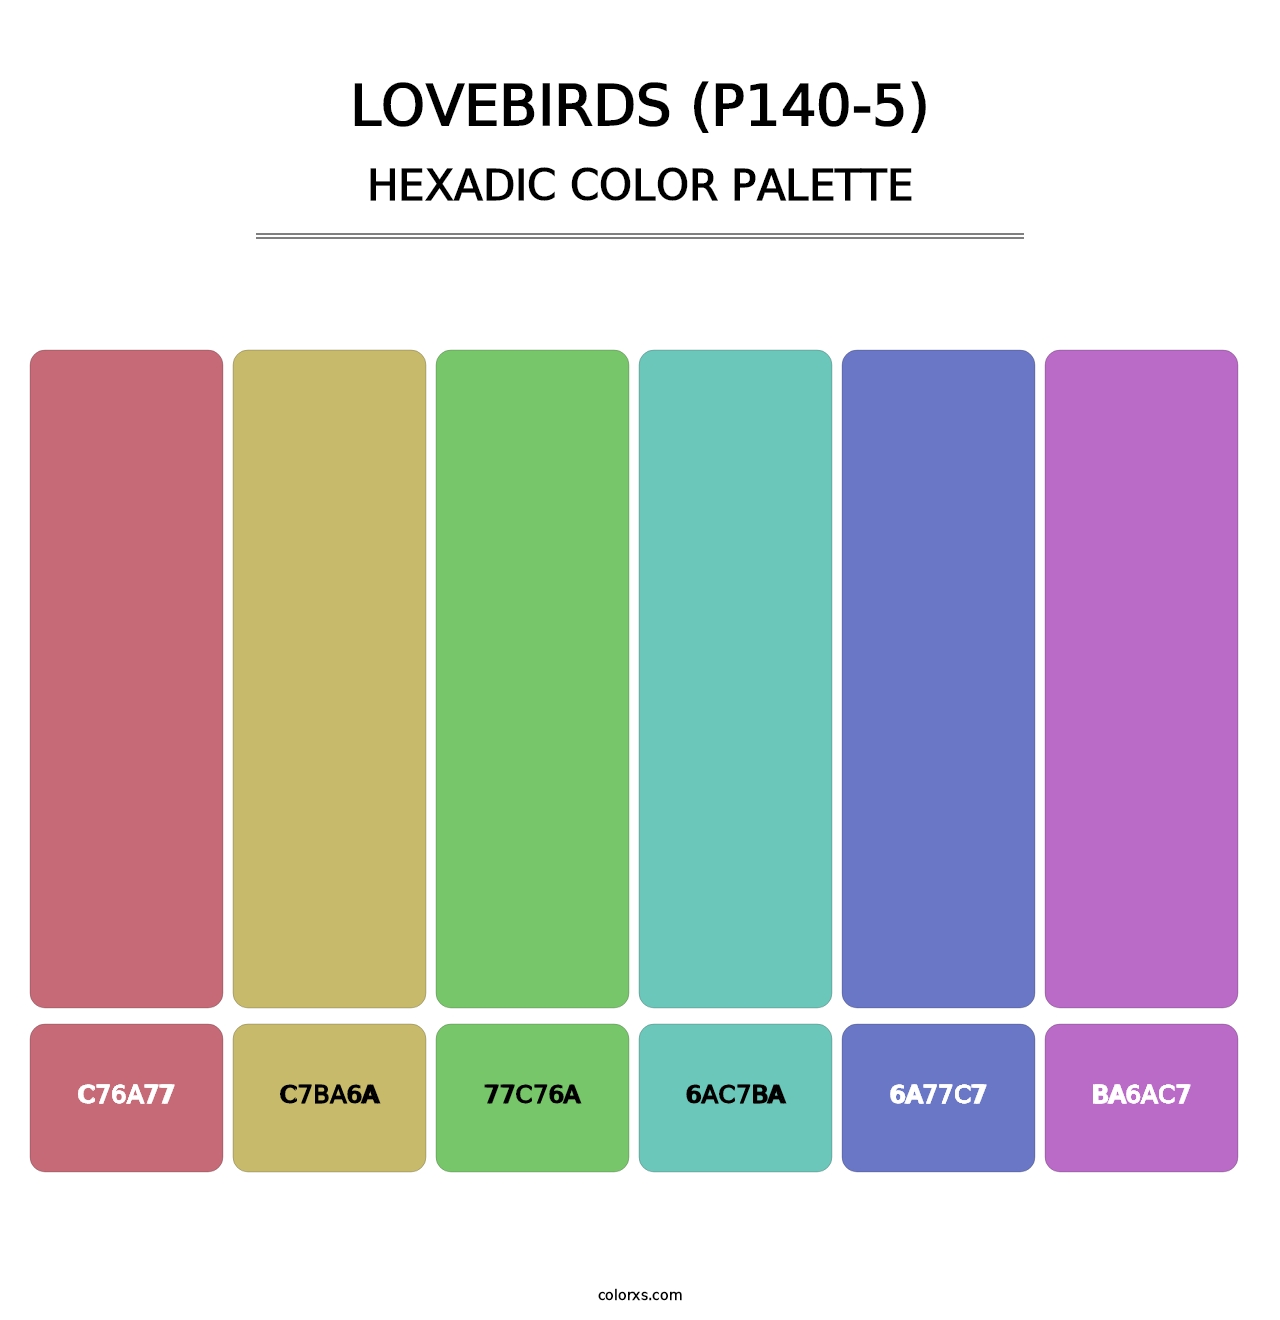 Lovebirds (P140-5) - Hexadic Color Palette